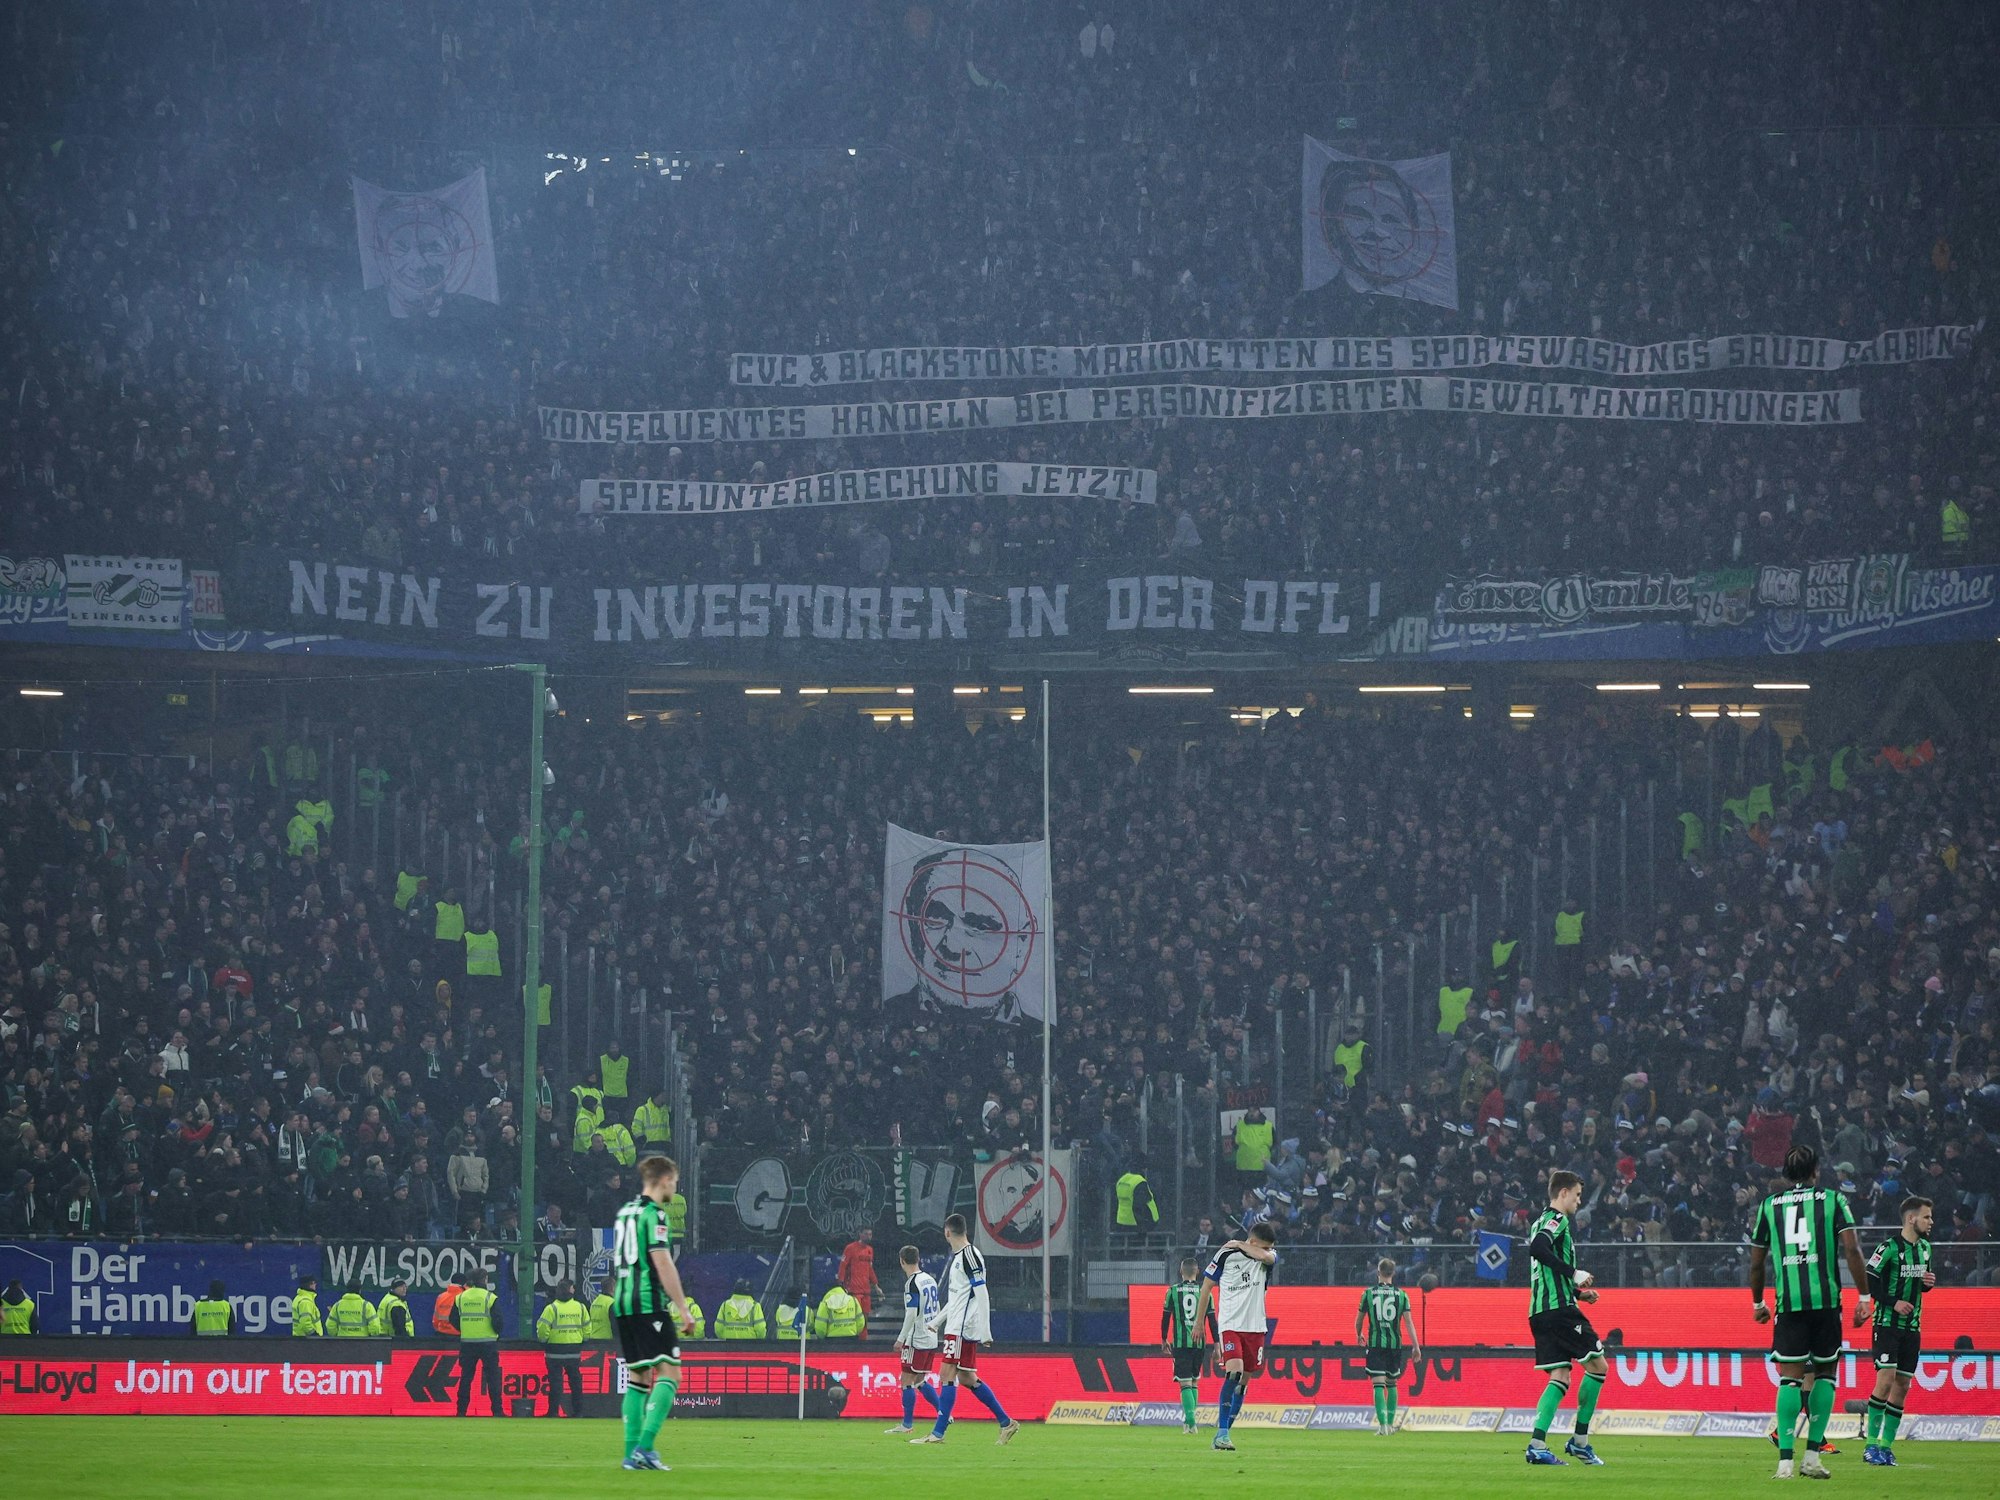 Bei einem Protest der Fans von Hannover 96 wird ein Banner mit der Aufschrift "Nein zu Investoren in der DFL!" gezeigt.